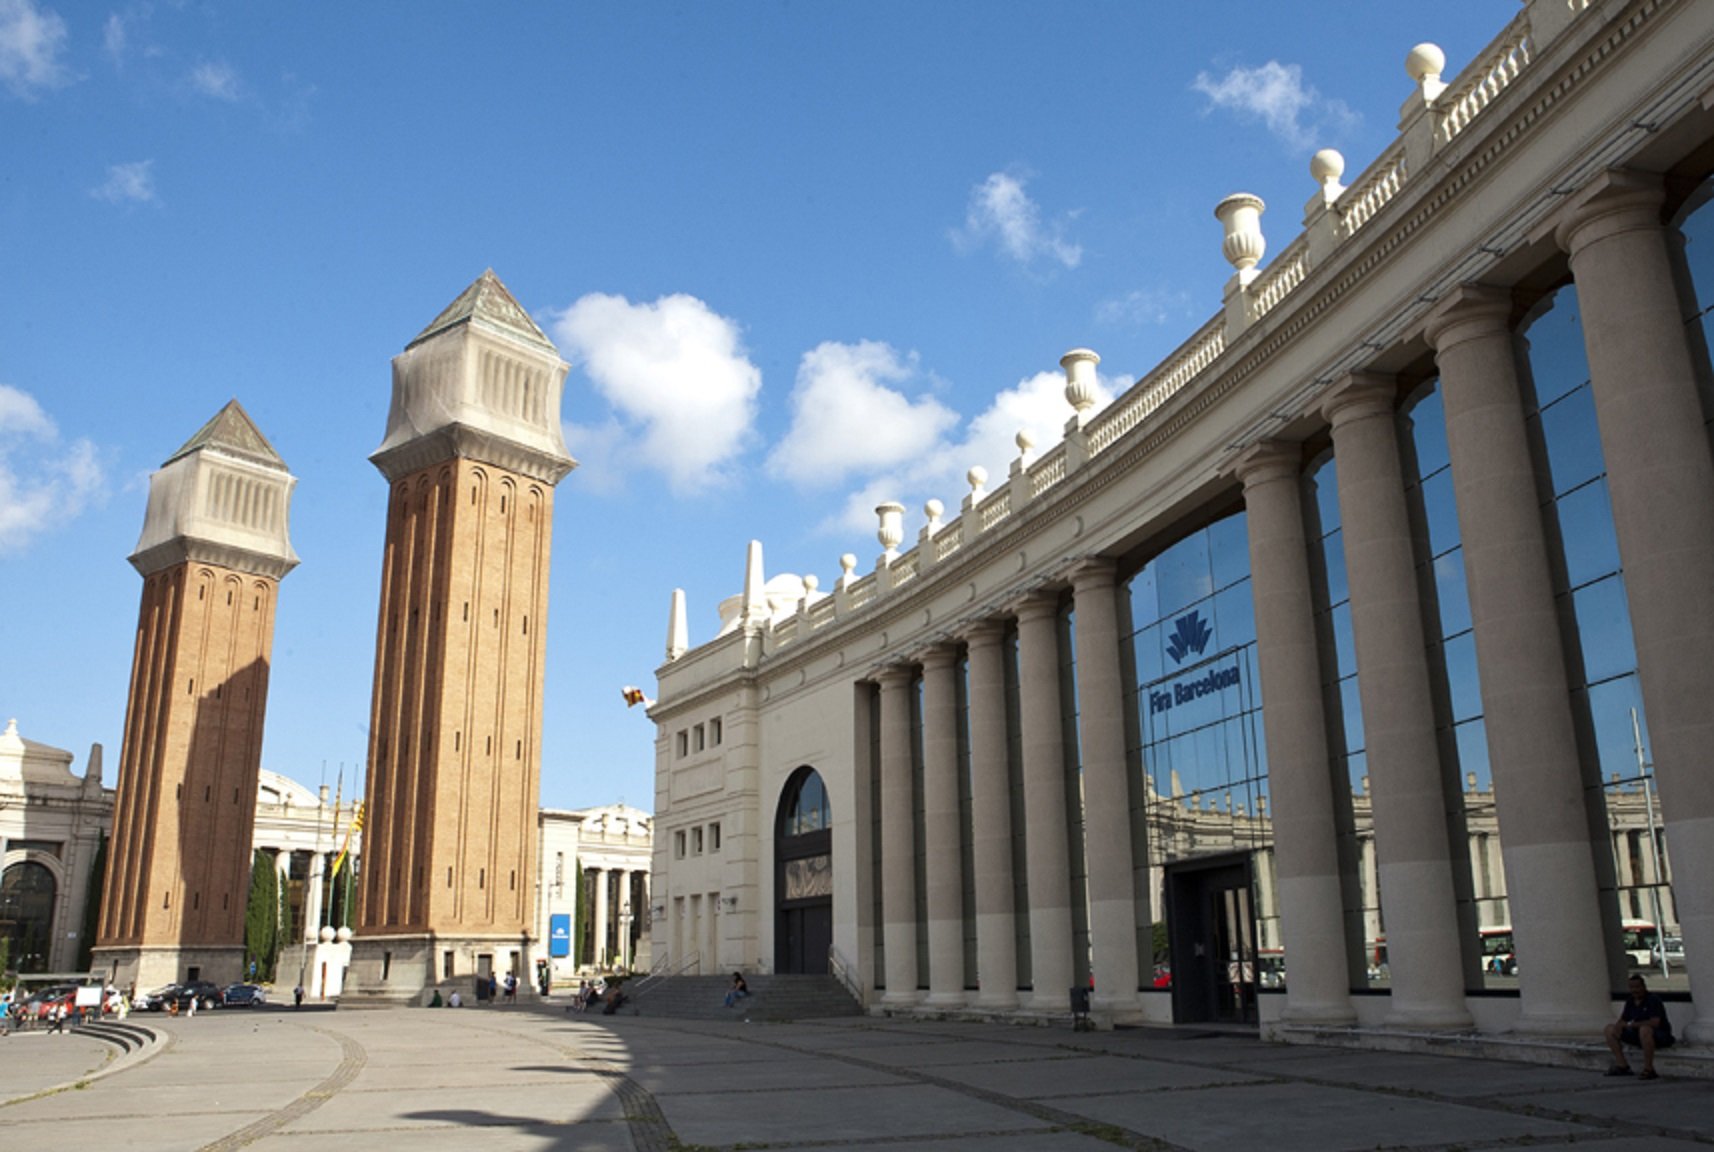 Barcelona trade fair complex will be major centre for receiving Ukrainian refugees